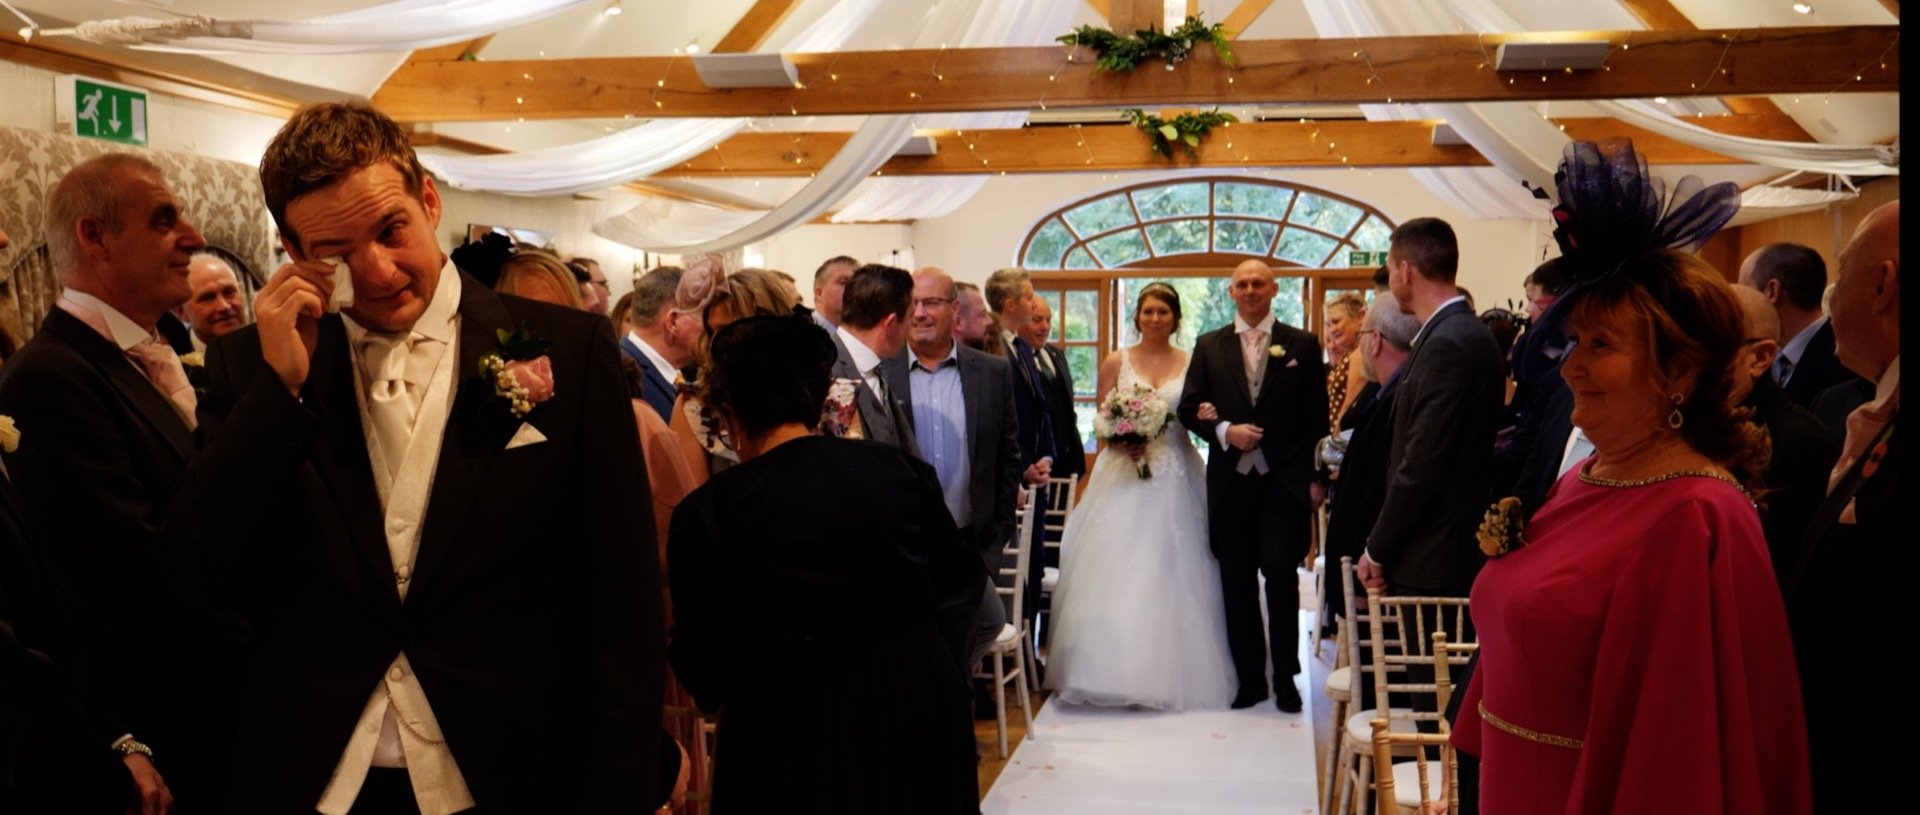 Tears from the groom as bride walks down the asile wedding video Essex.jpg